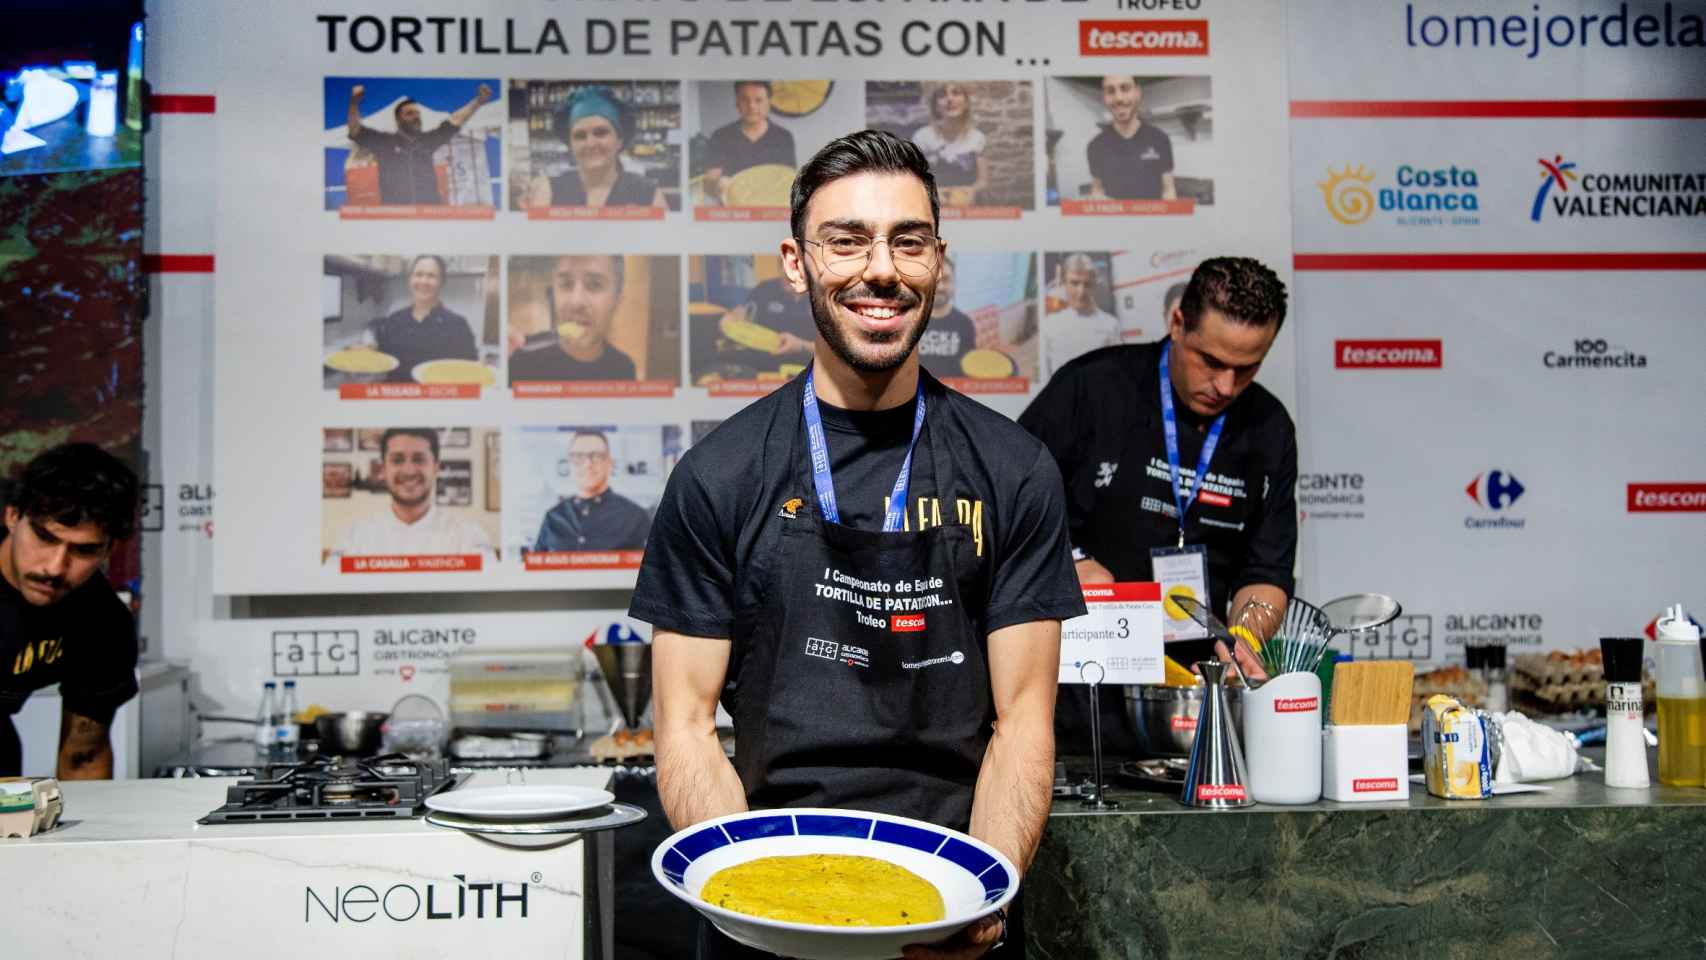 Alejandro Oliveira de La Falda con la tortilla ganadora